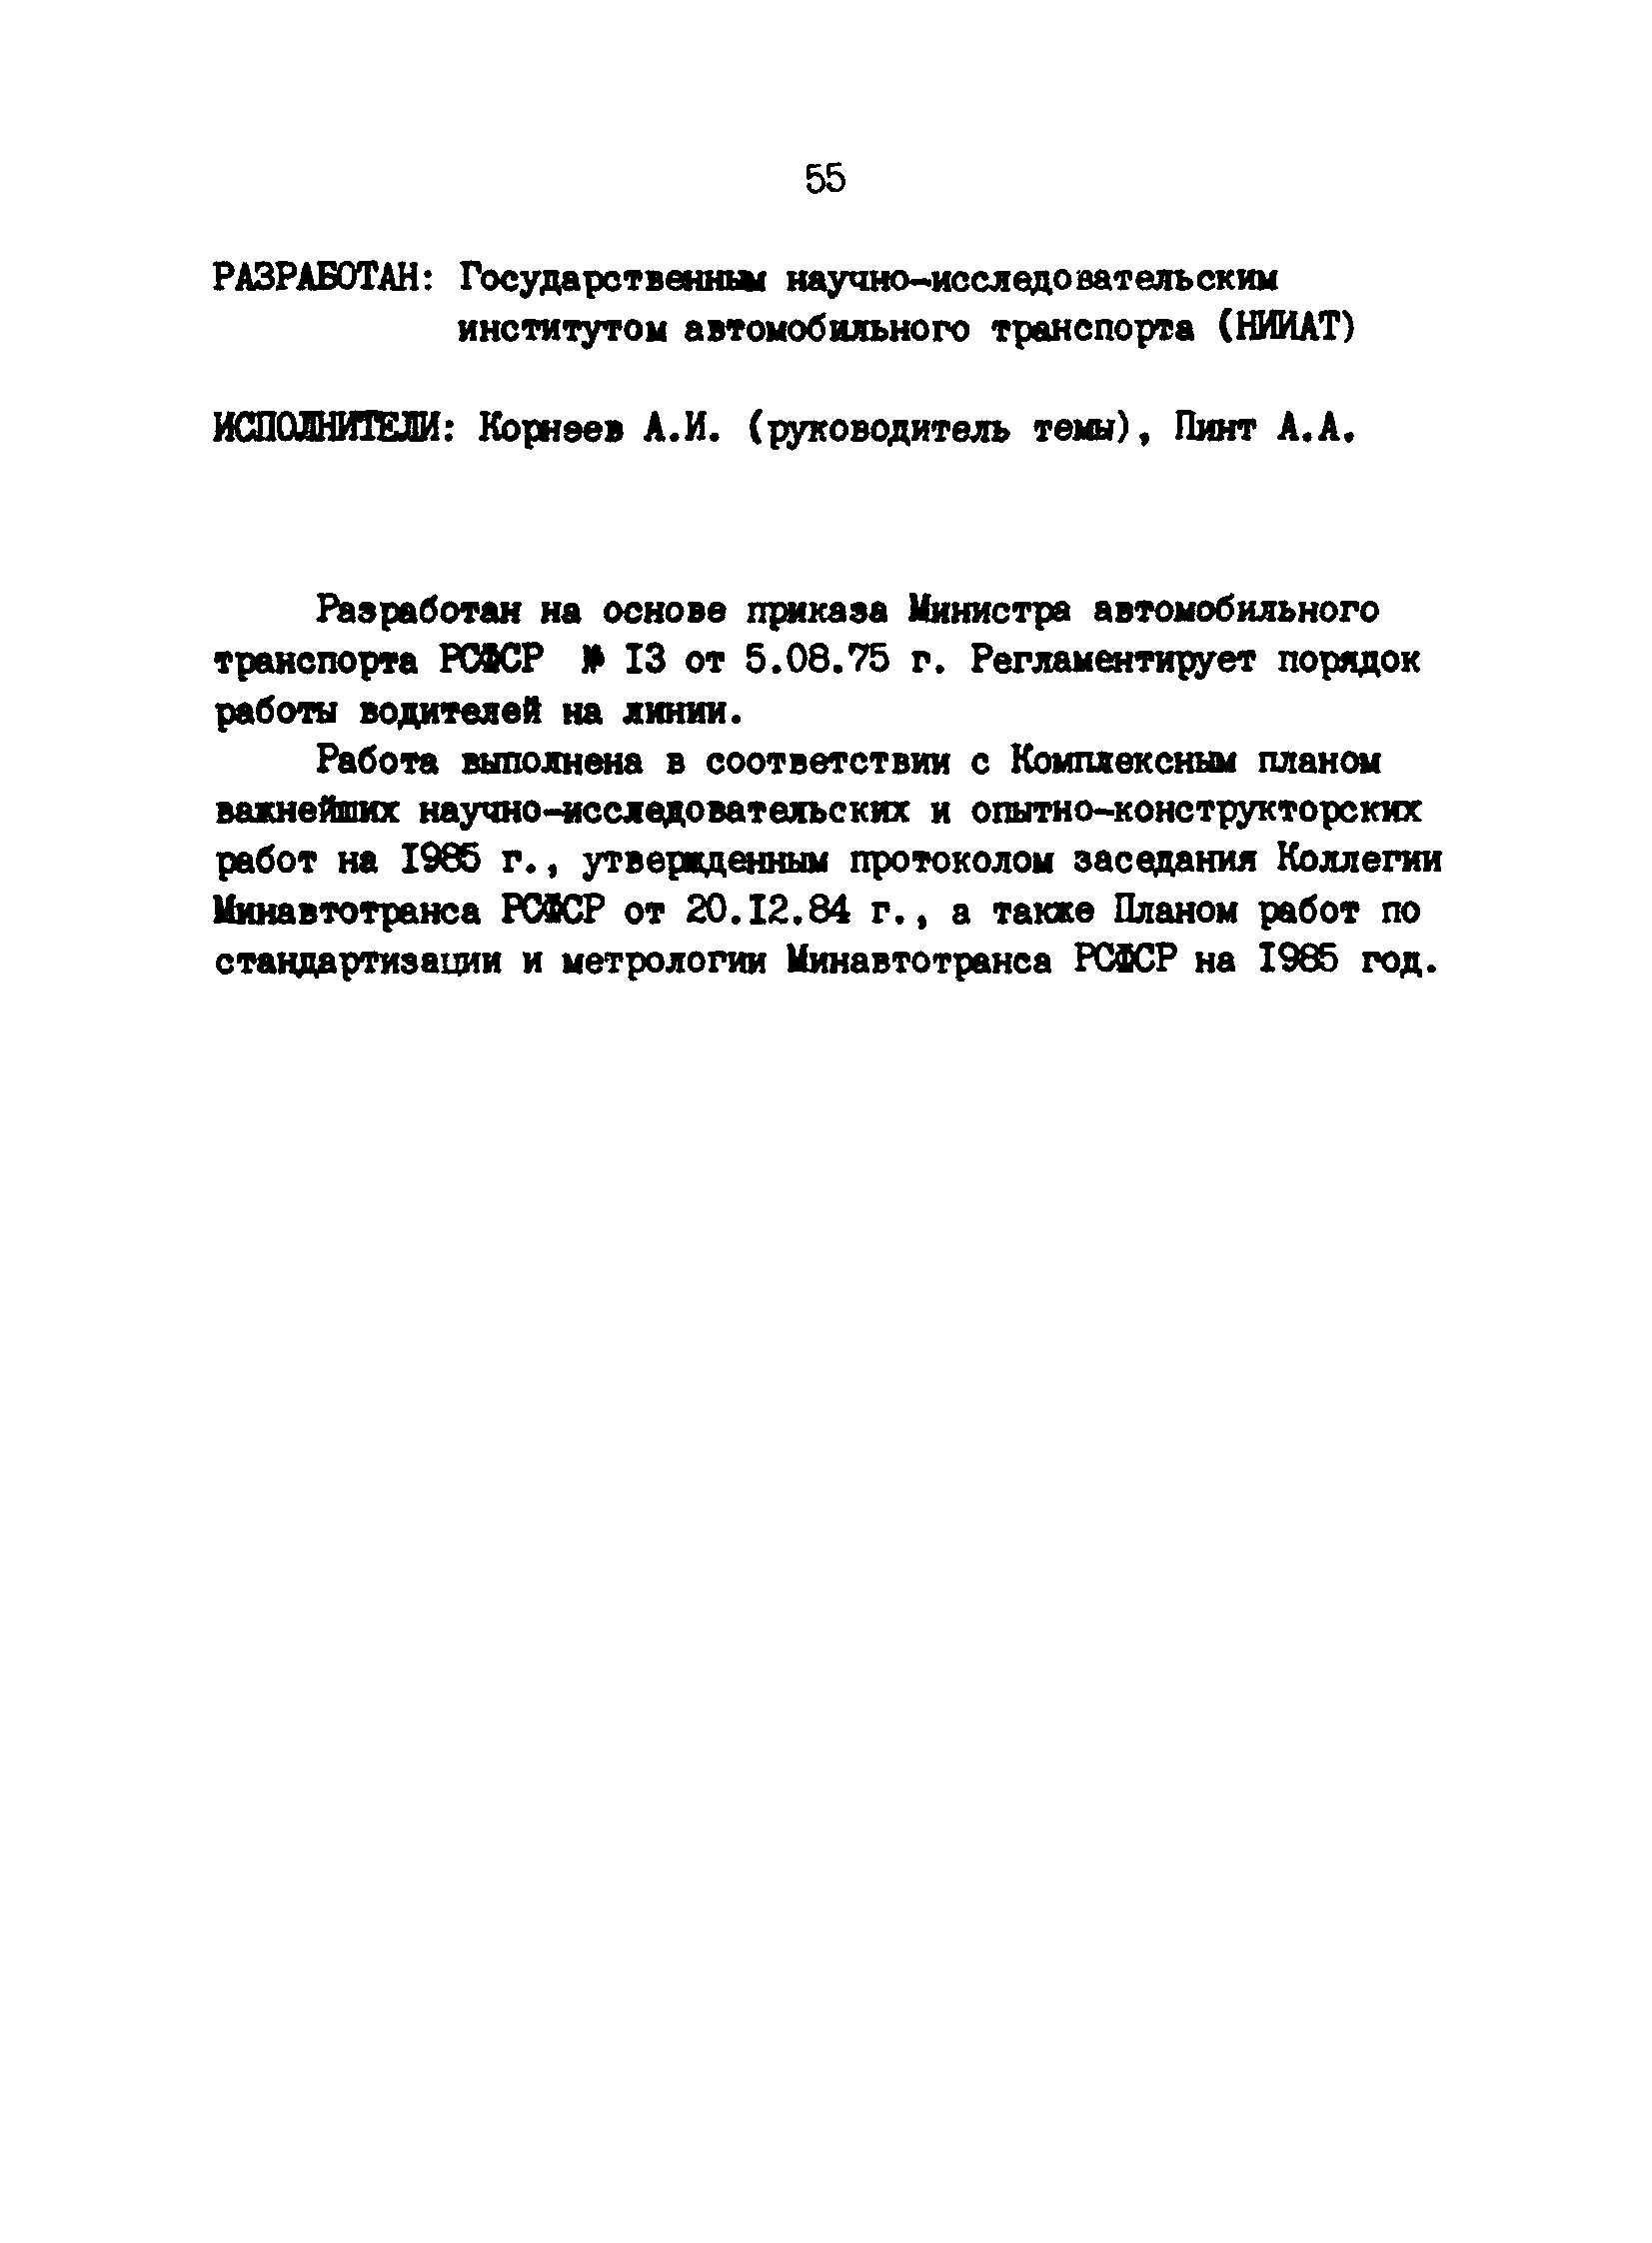 РД 200-РСФСР-12-0071-86-05